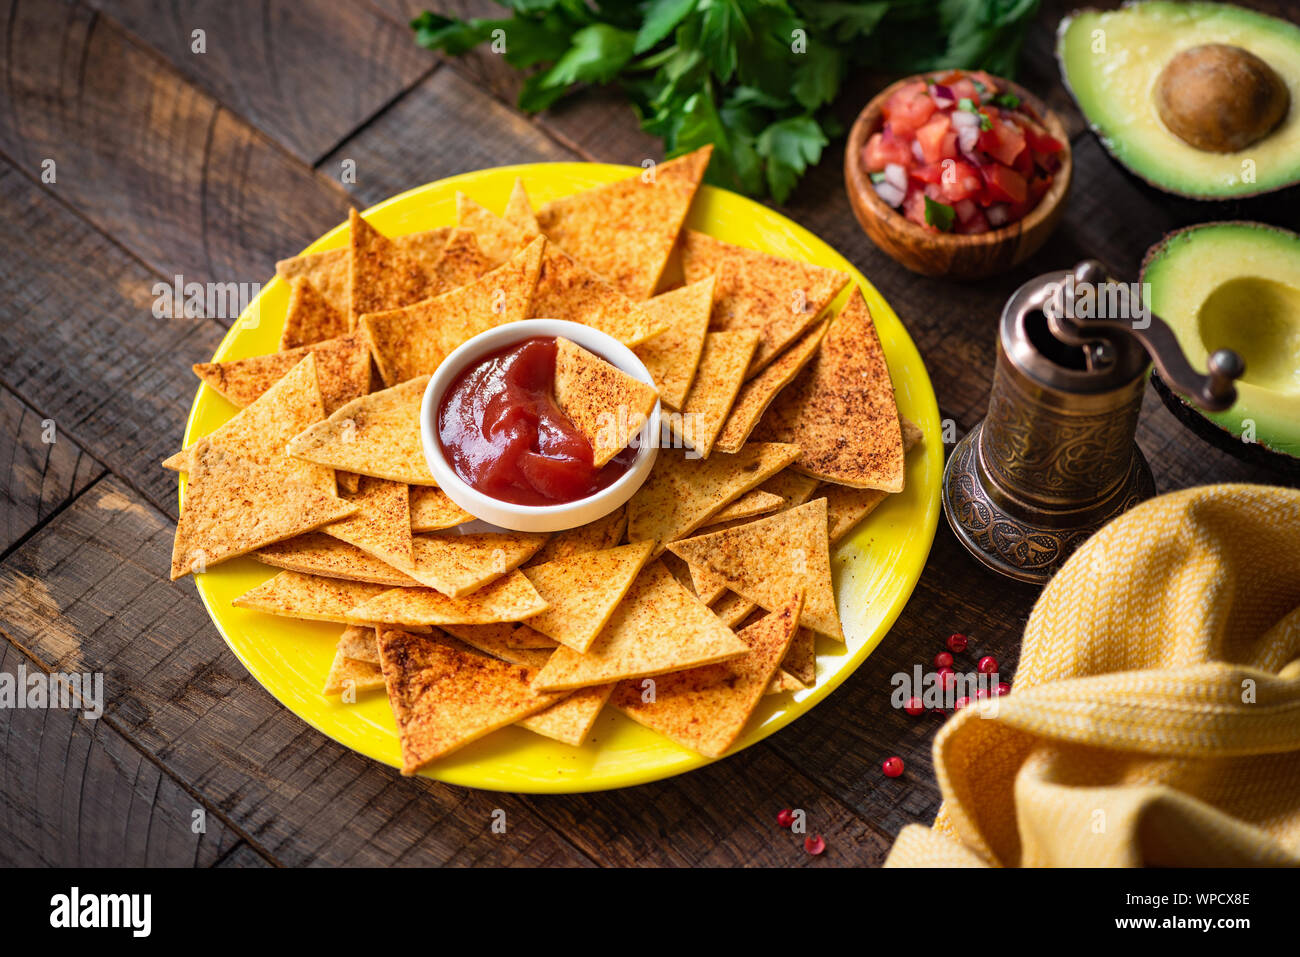 Nacho chips tortilla mexicaine avec la sauce tomate et la salsa sur la plaque jaune, fond de bois. Aliments Tex Mex Banque D'Images